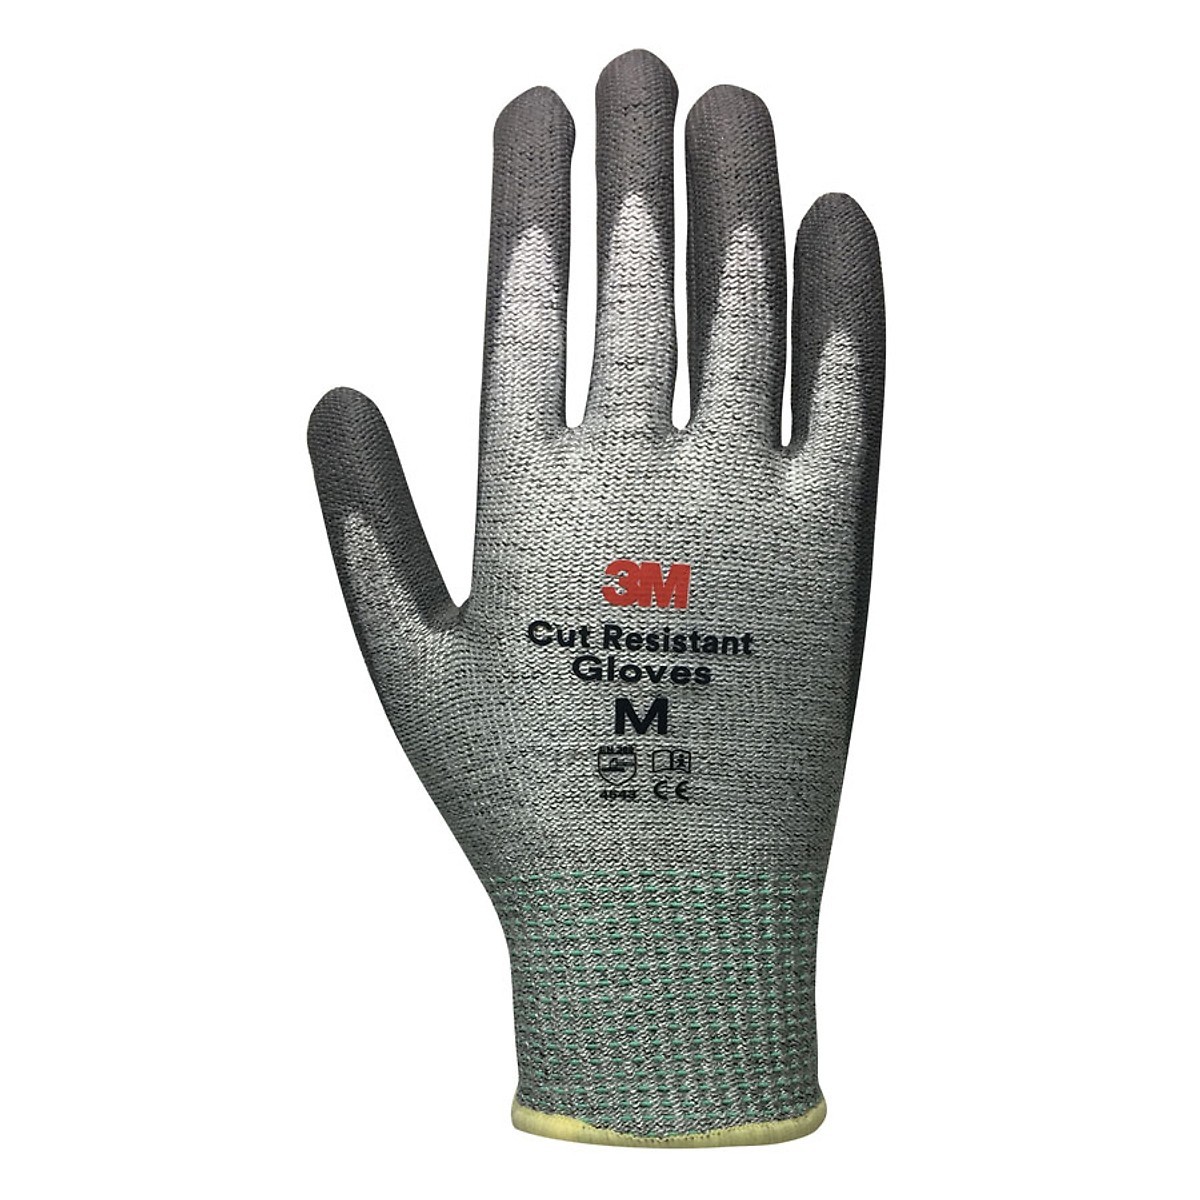 3M Cut Resistant Gloves (ATG-3M-LV5-M)